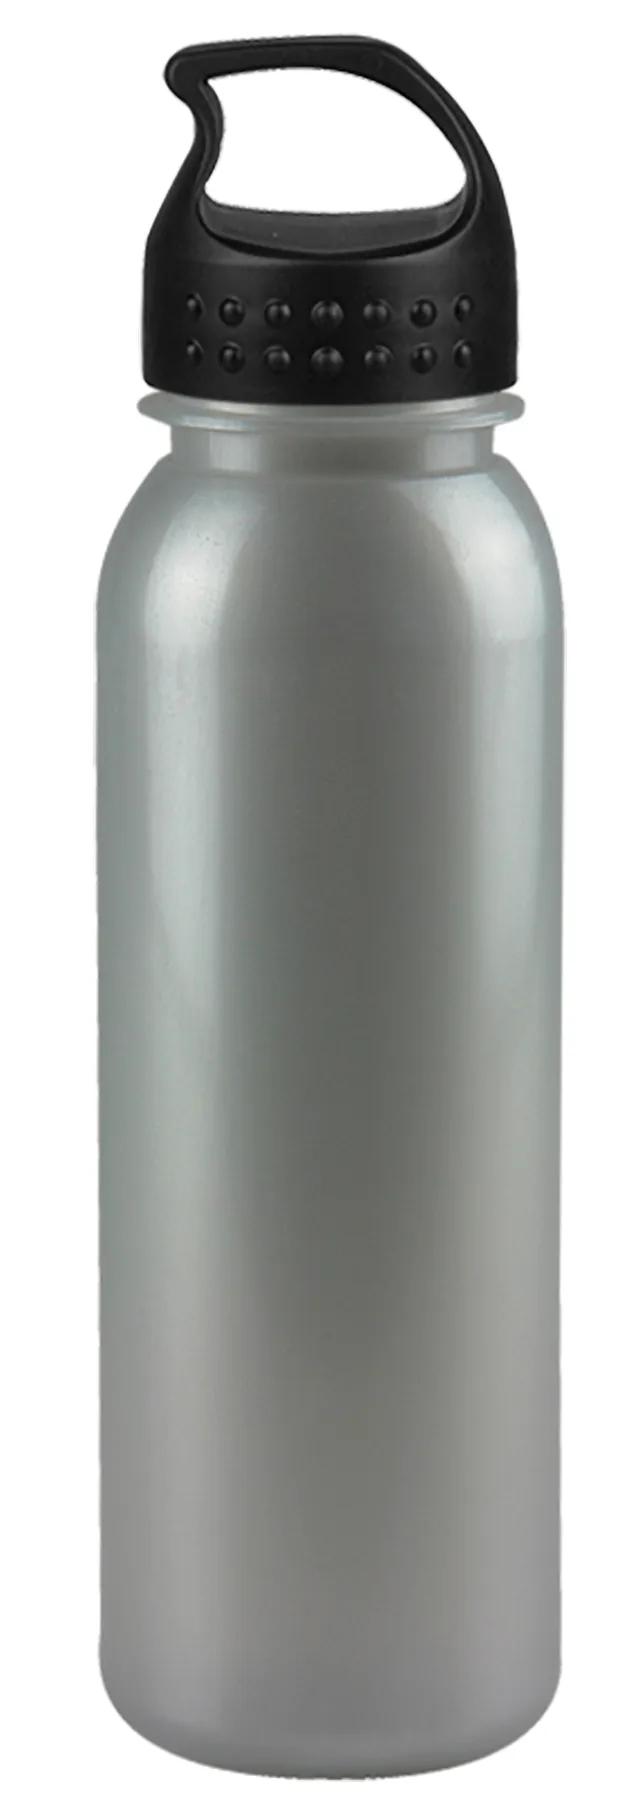 Terrain Metalike Bottle - 24 oz. 7 of 21